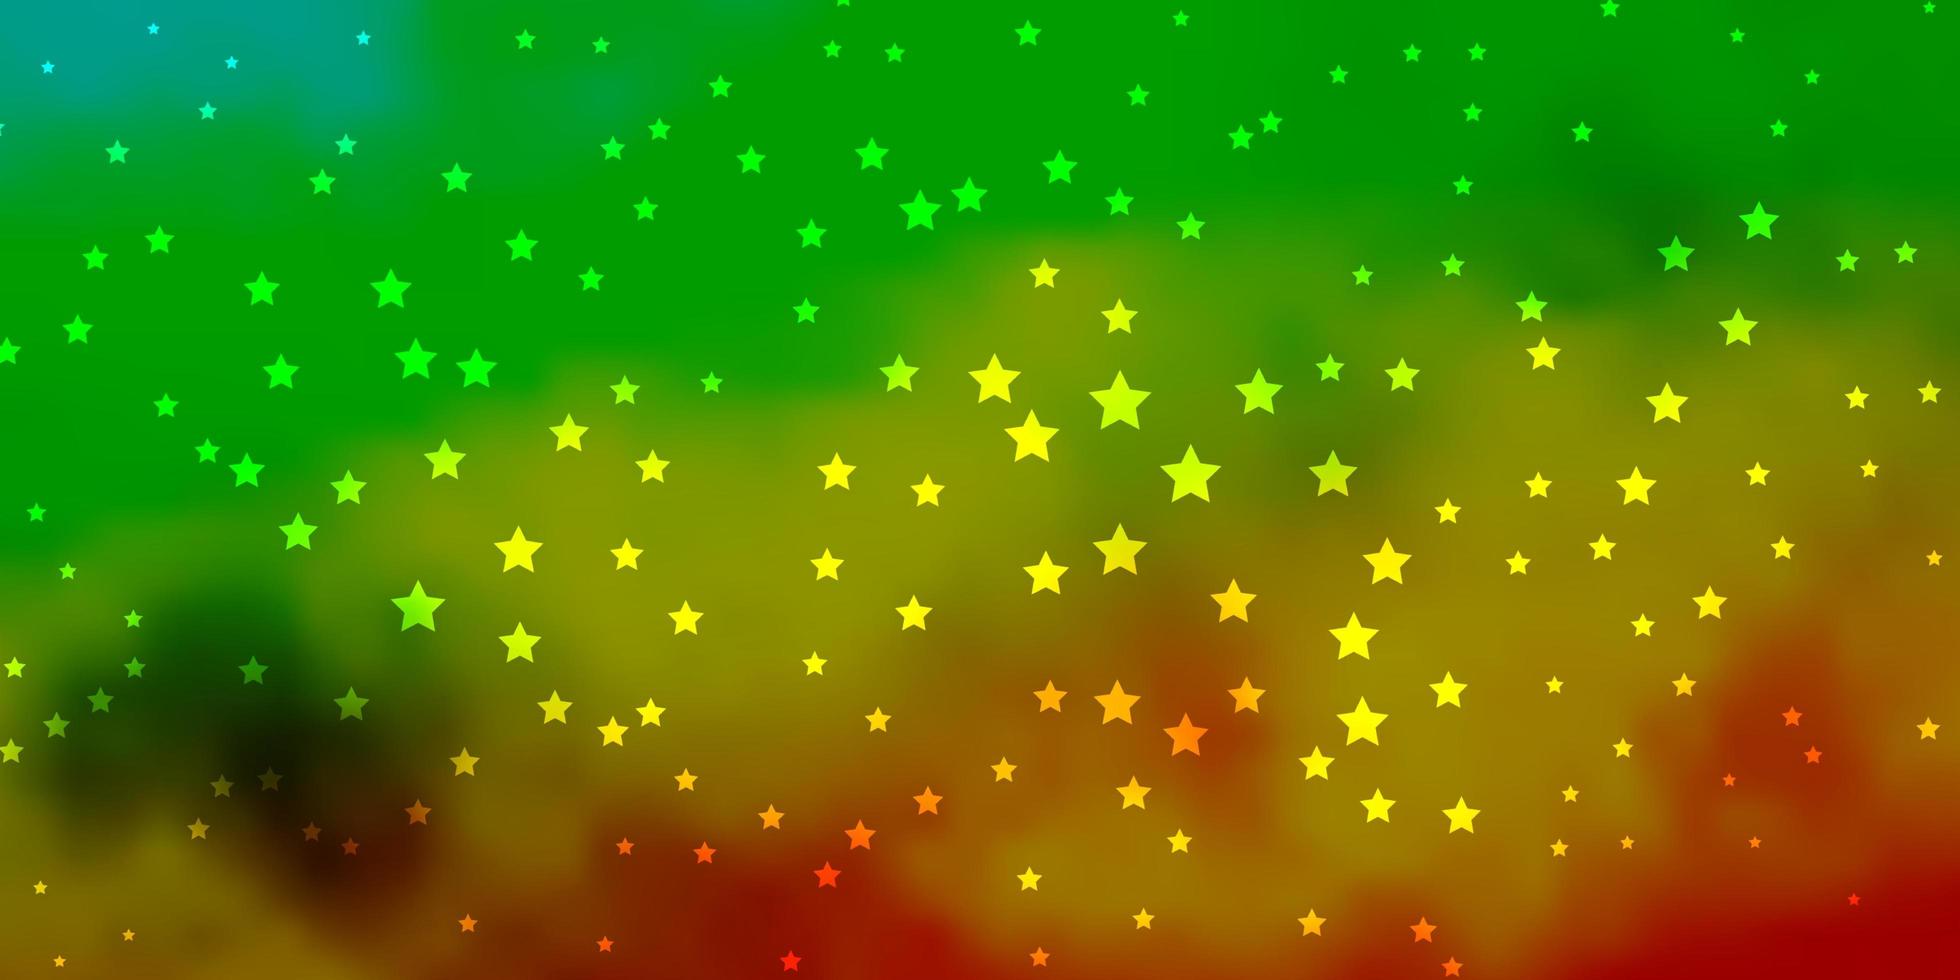 patrón de vector amarillo verde oscuro con estrellas abstractas diseño decorativo borroso en estilo simple con patrón de estrellas para folletos de anuncios de año nuevo